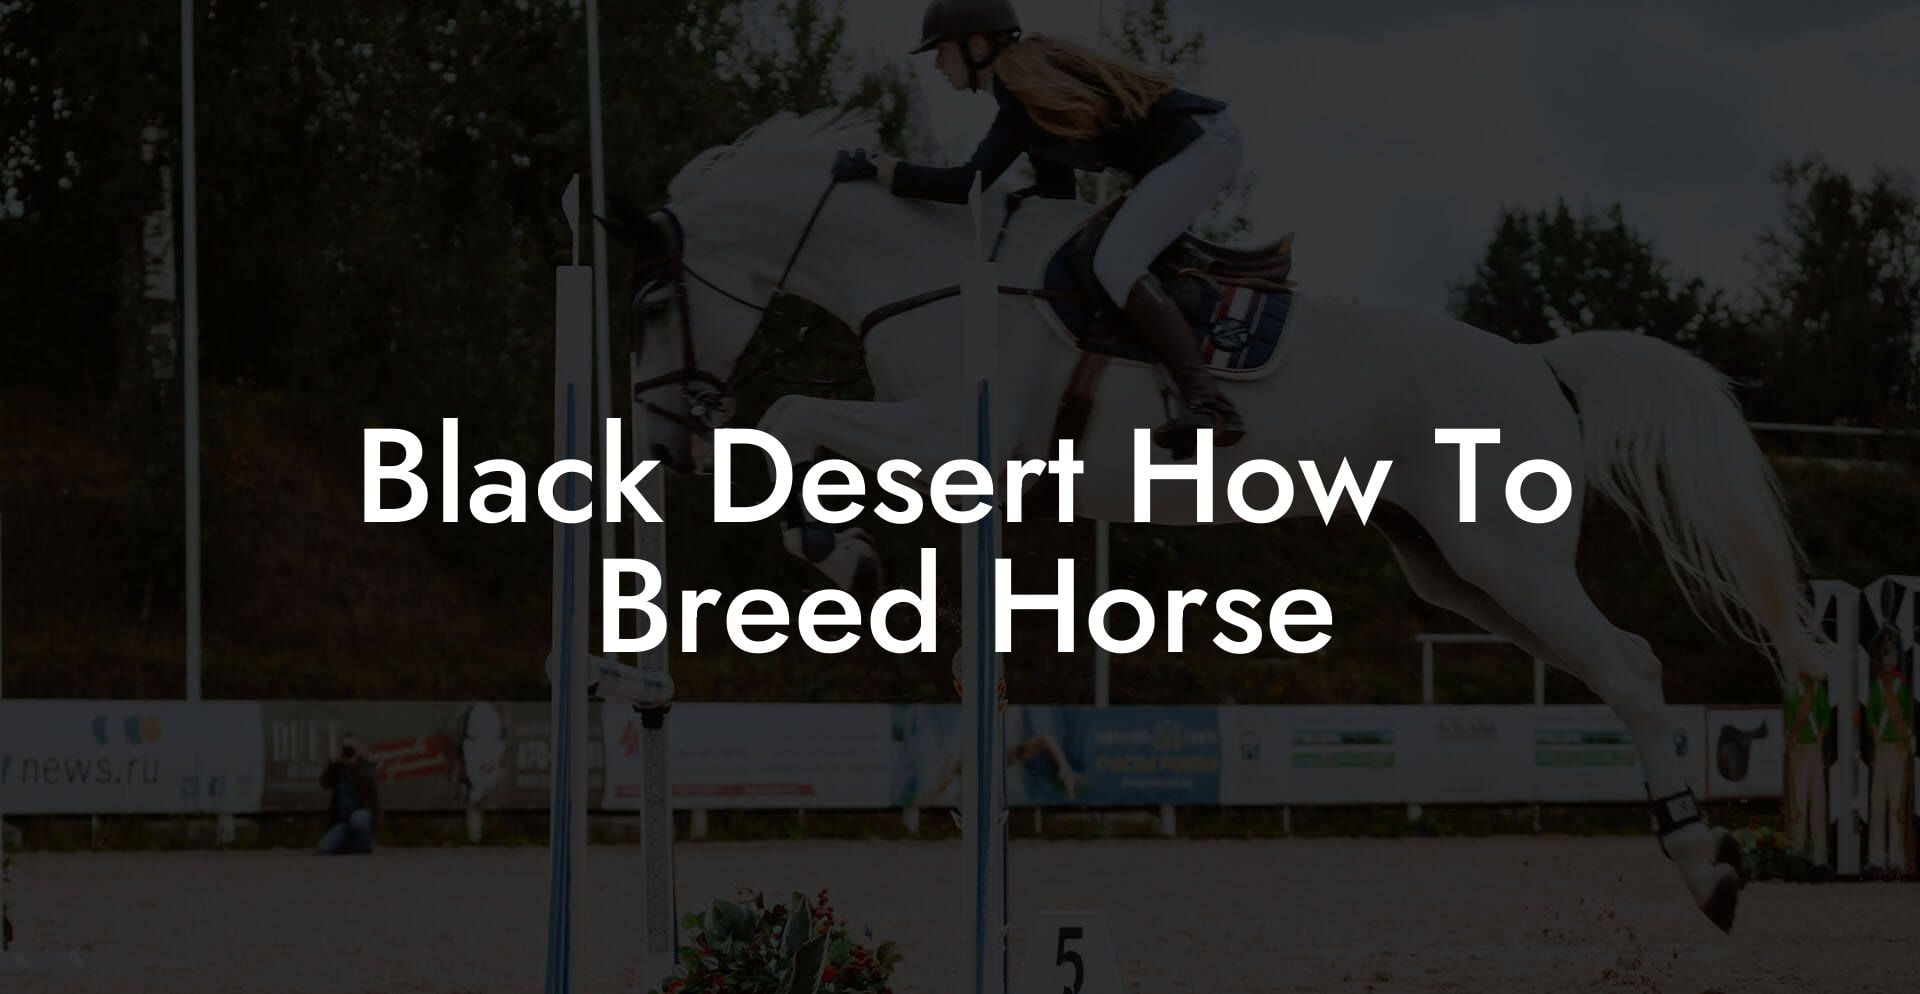 Black Desert How To Breed Horse